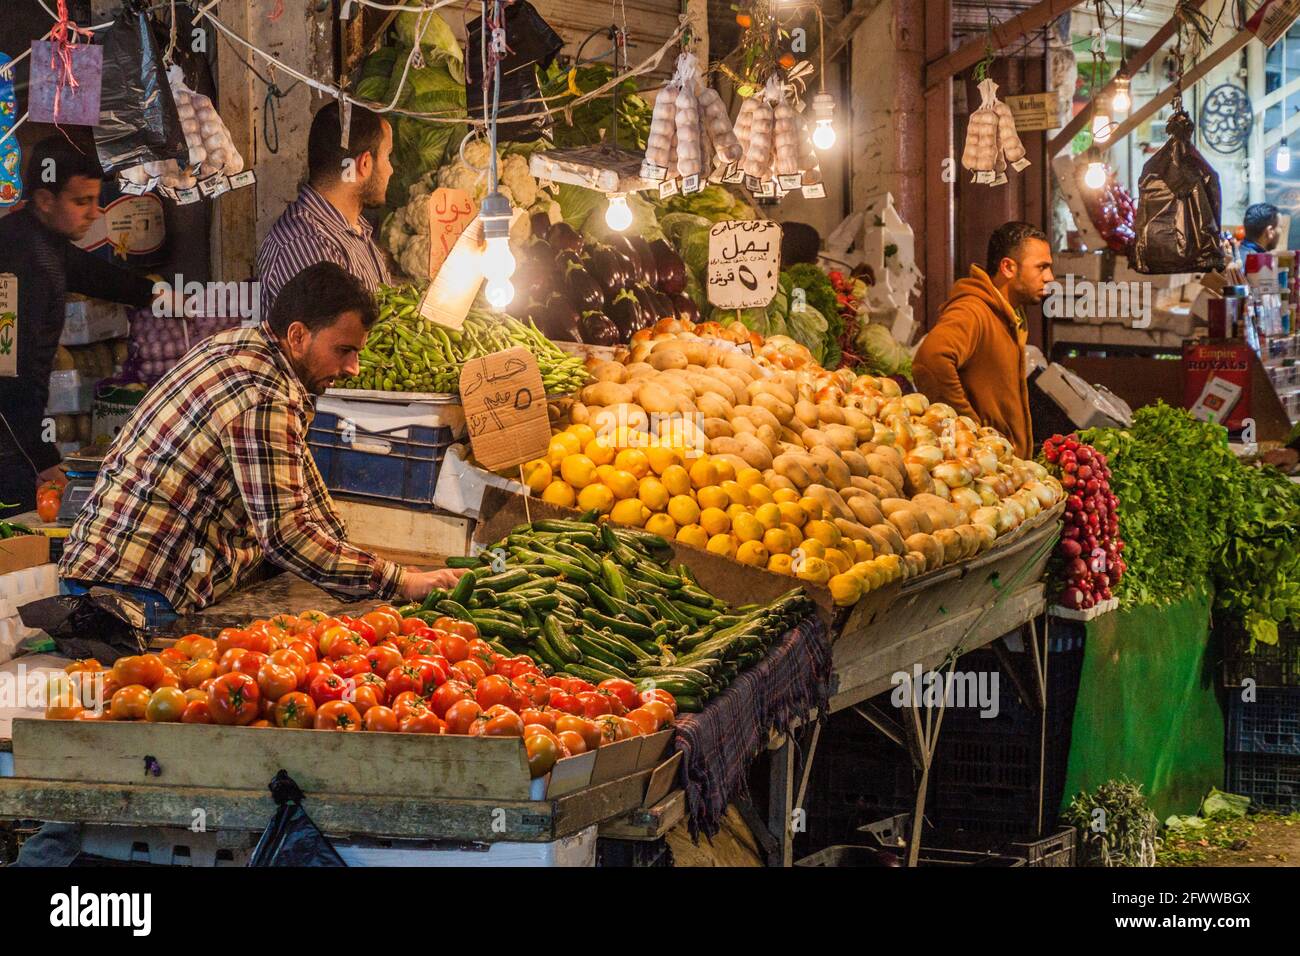 Jordan amman bazaar hi-res stock photography and images - Alamy